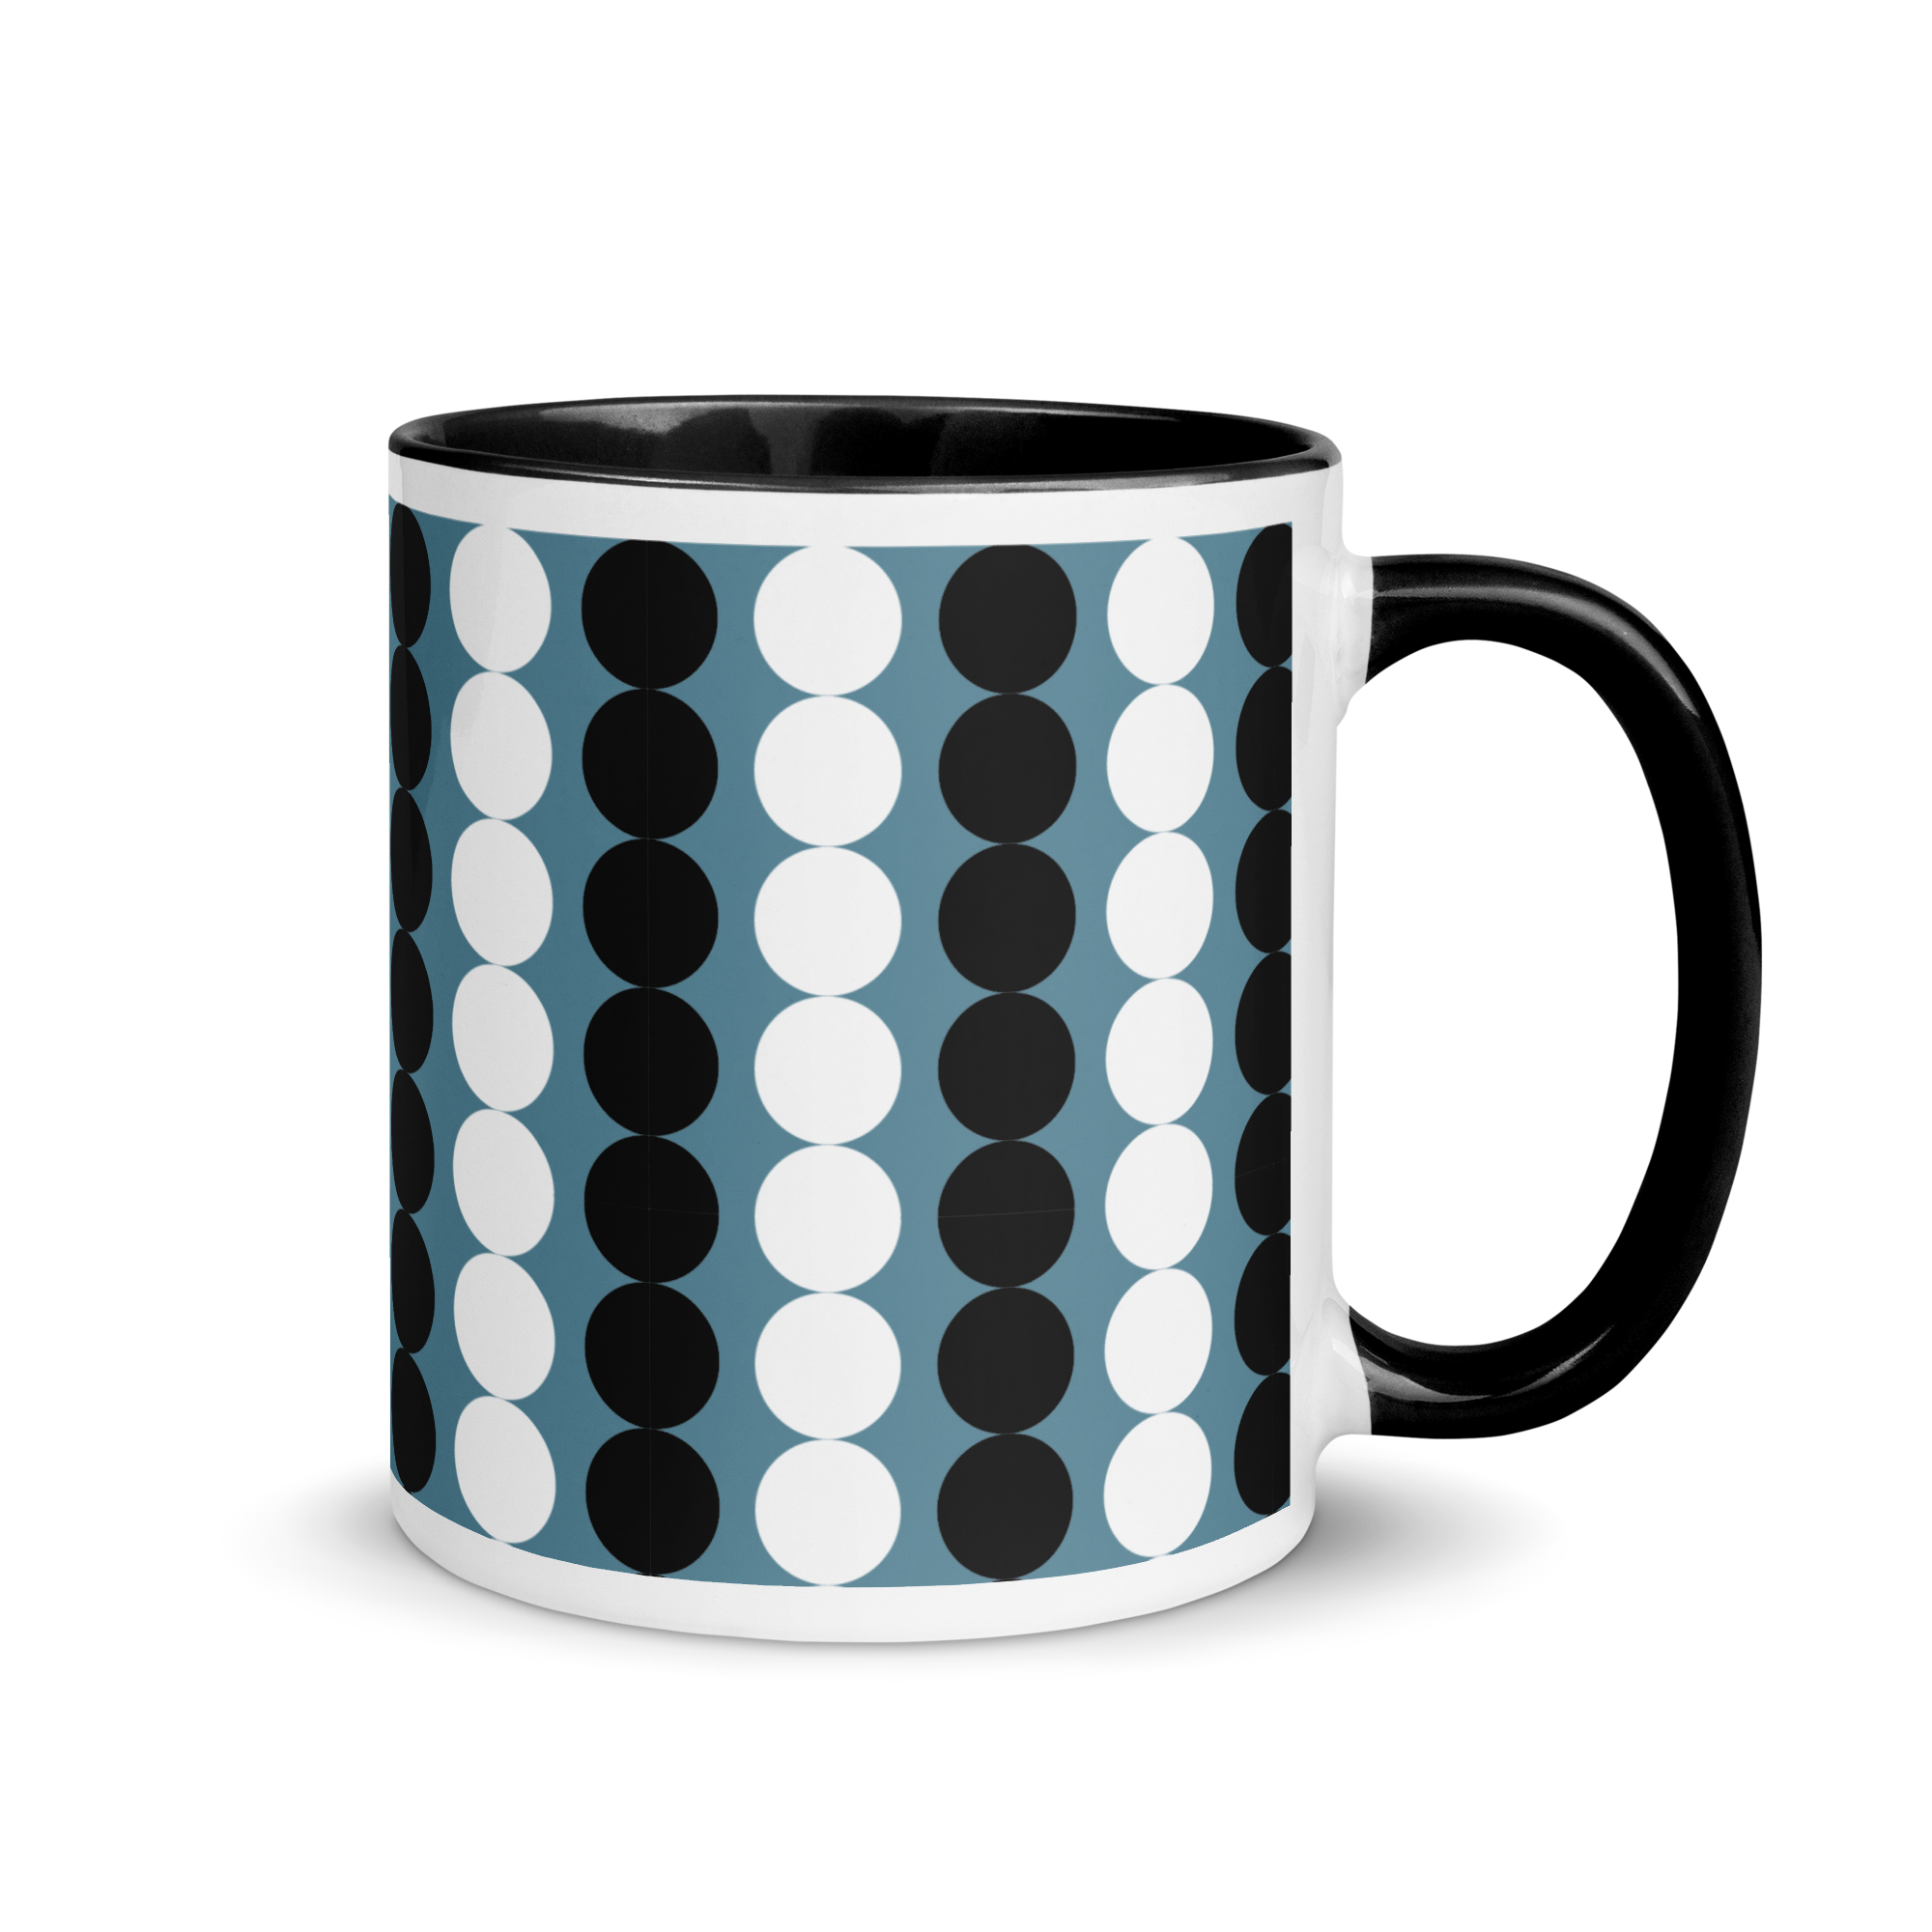 white-ceramic-mug-with-color-inside-black-11-oz-right-65e47232badab.png